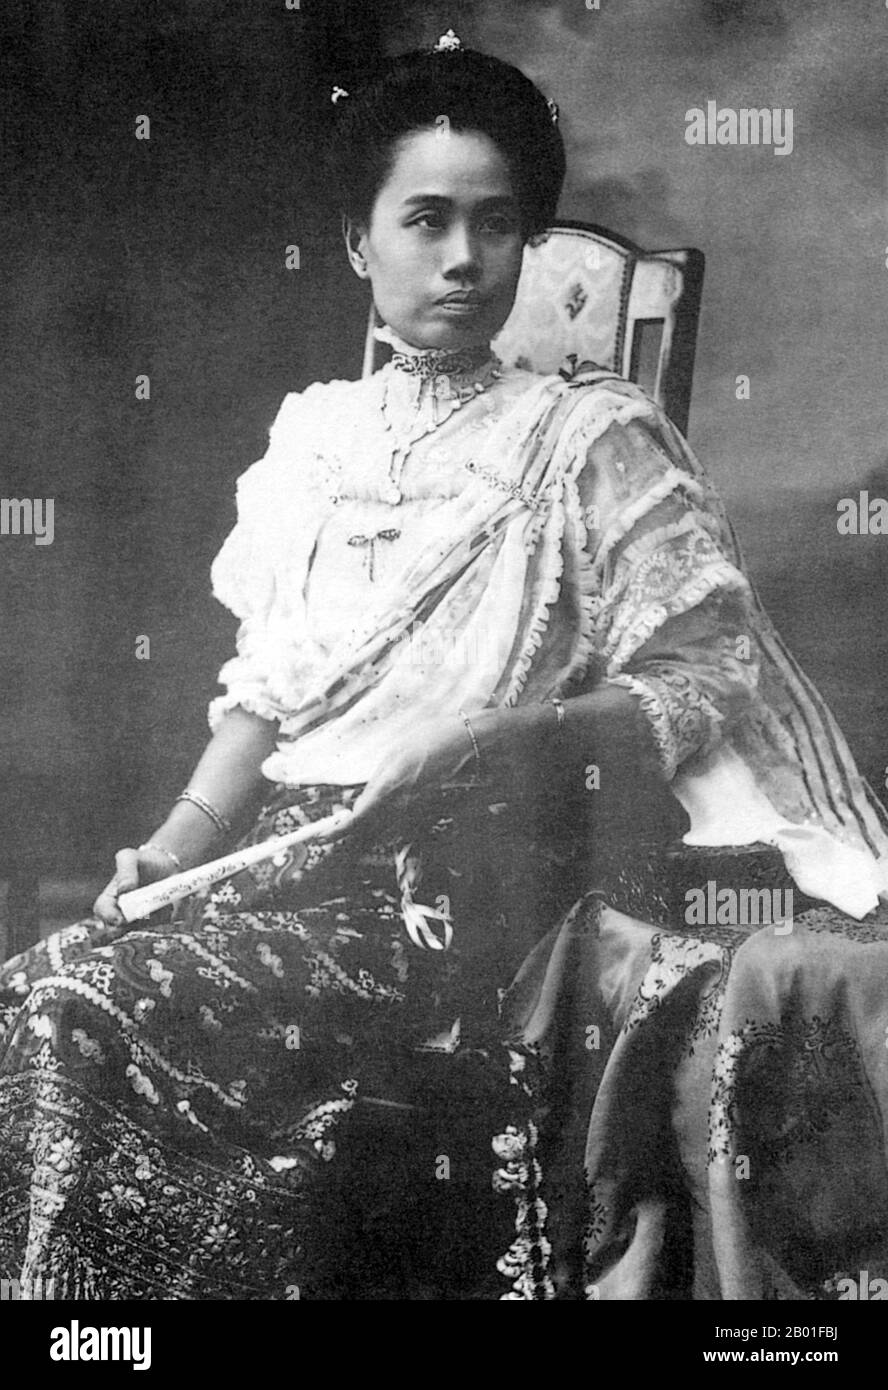 Thailand: Prinzessin Consort Dara Rasmi (26. August 1873 - 9. Dezember 1933), formelles Foto, Ende des 19. Jahrhunderts. Prinzessin Dara Rasmi war die Prinzessin von Chiang Mai und Siam (später Thailand) und die Tochter von König Inthawichayanon und Königin Thipkraisorn Rajadewi von Chang Mai, einem Nachkomme der Chao Chet Ton Dynastie. Sie war eine der Prinzessinnen-Konsortien von Chulticokorn, König Rama V. von Siam, und gebar eine Tochter von König Chulticokorn, Prinzessin Vimolnaka Nabisi. 1886 verließ sie Chiang Mai, um den Großen Palast in Bangkok zu betreten. Stockfoto